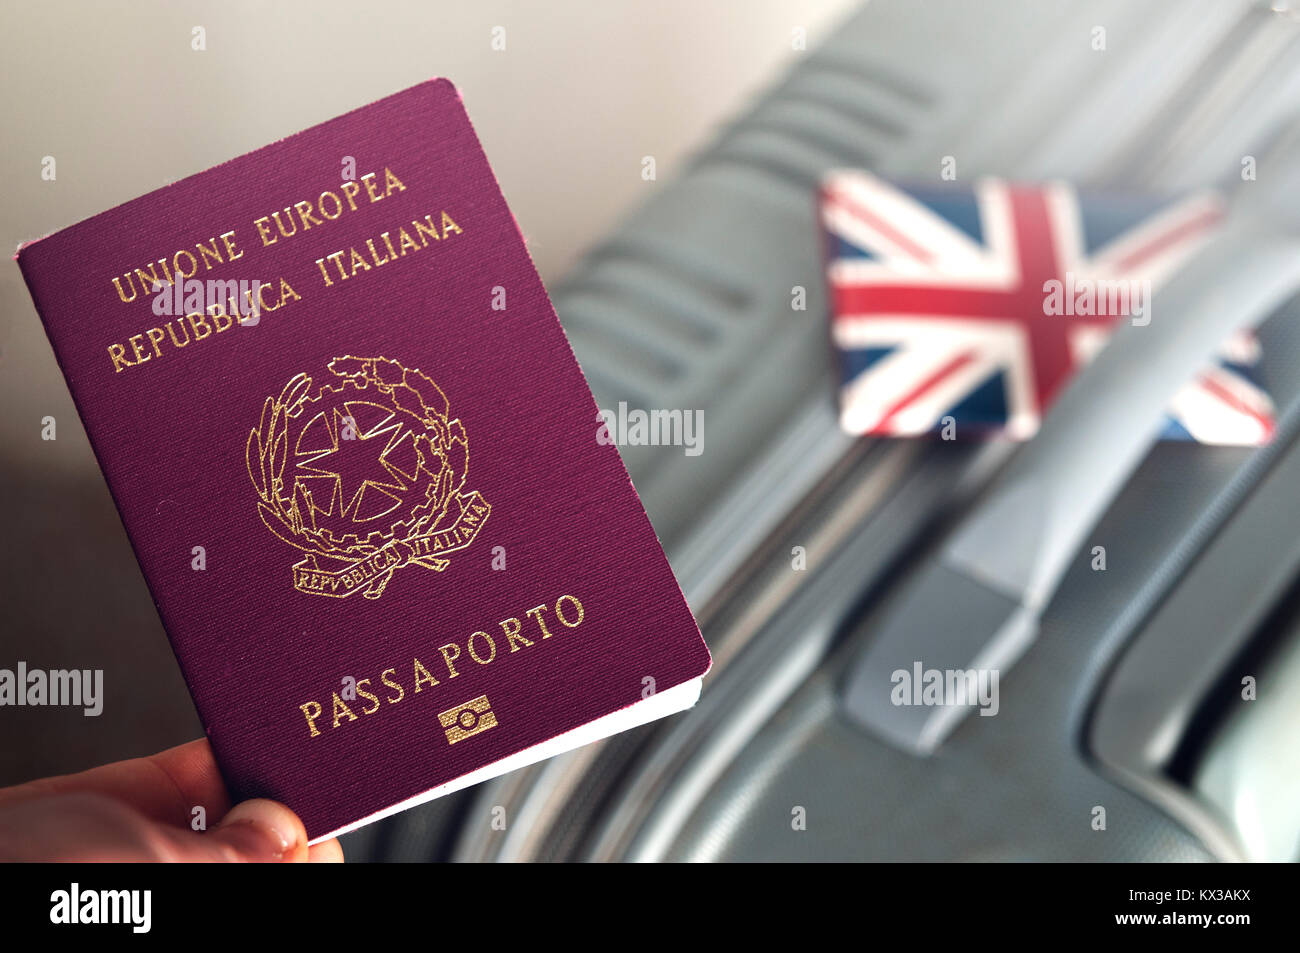 Einen italienischen Pass holded über einen Koffer mit einem englisch-id-Inhaber:  brexit Konzept Stockfotografie - Alamy